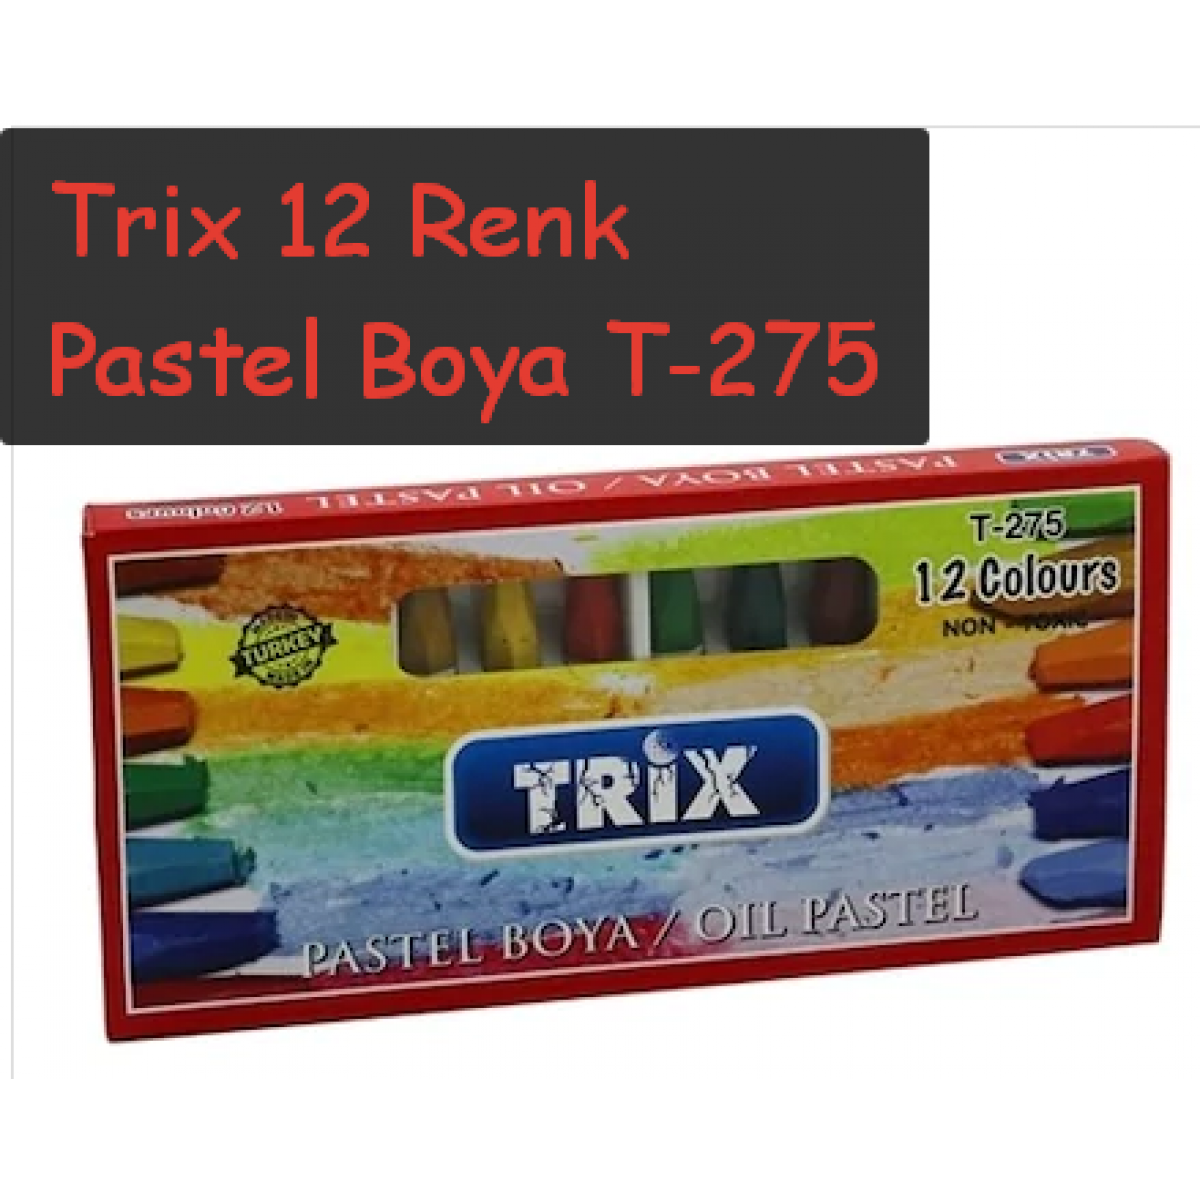 Trix 12 Renk Pastel Boya T 275